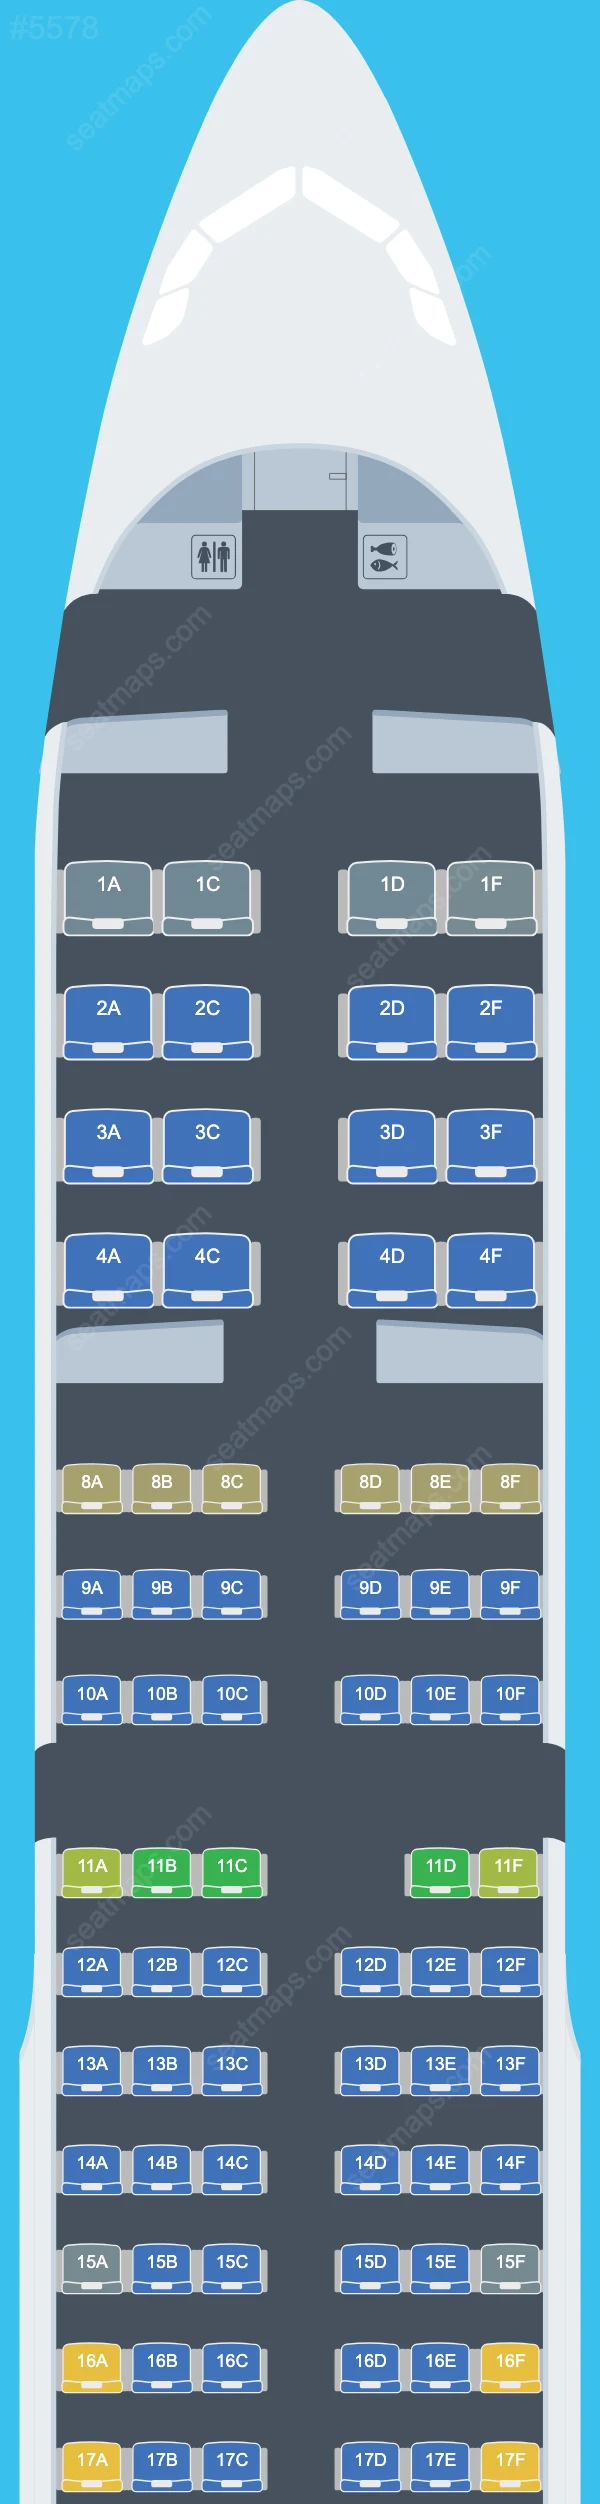 Aeroflot Airbus A321 Seat Maps A321-200 V.1